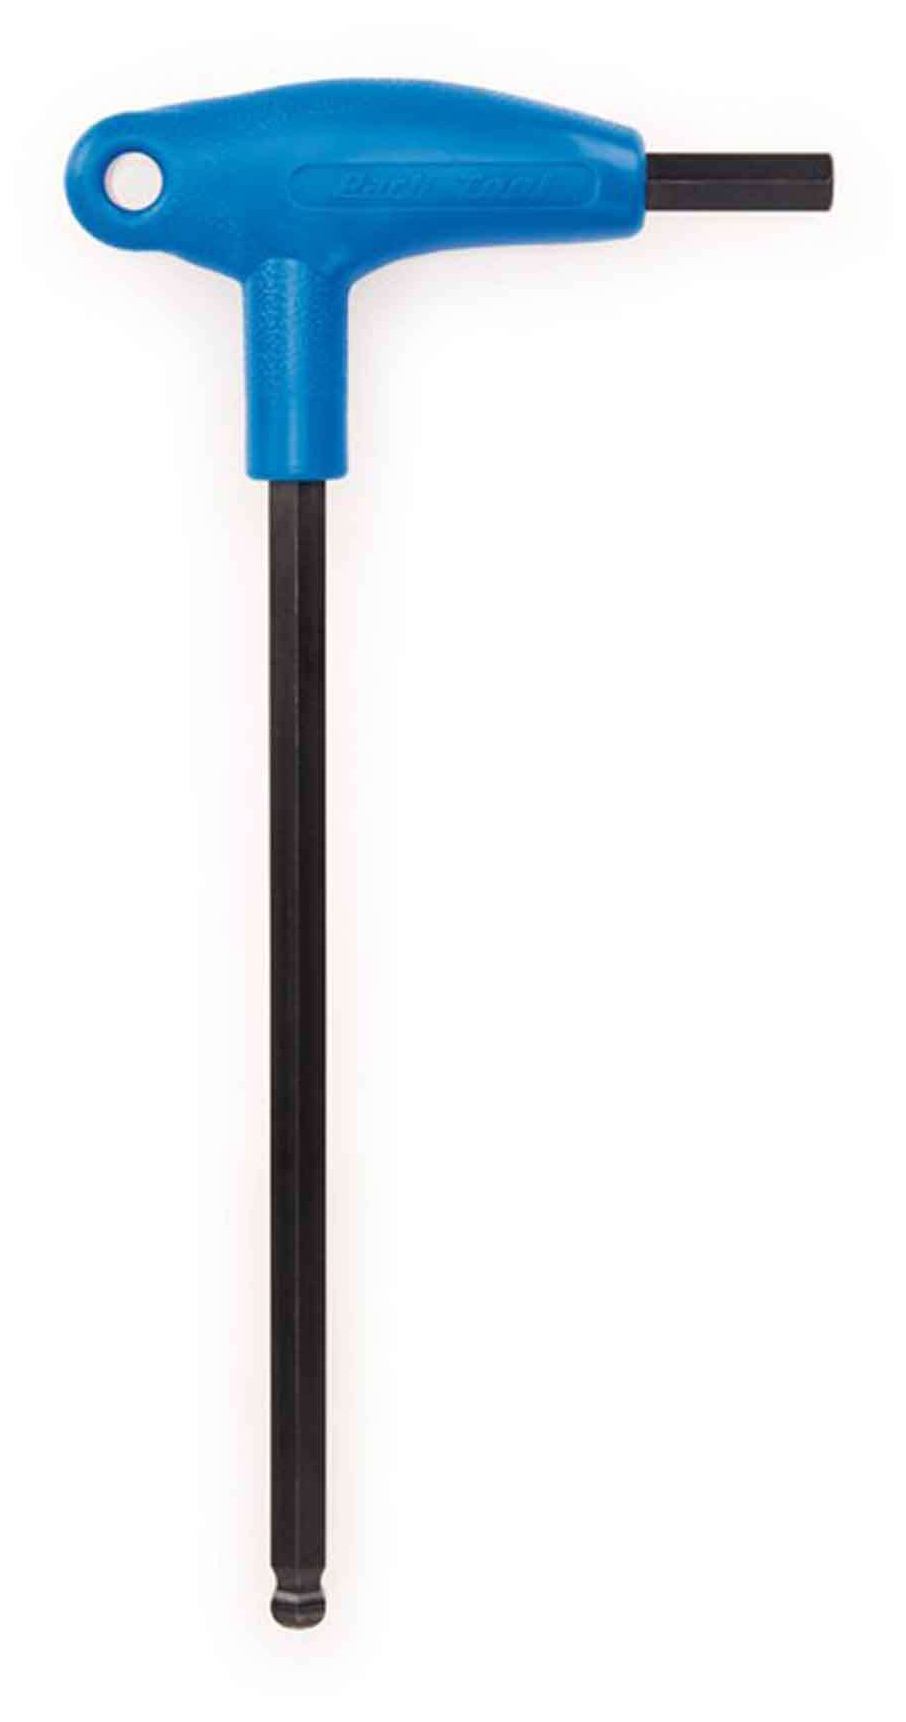  Инструмент для велосипеда Parktool шестигранник, Г-образный с ручкой, 11мм (PTLPH-11)